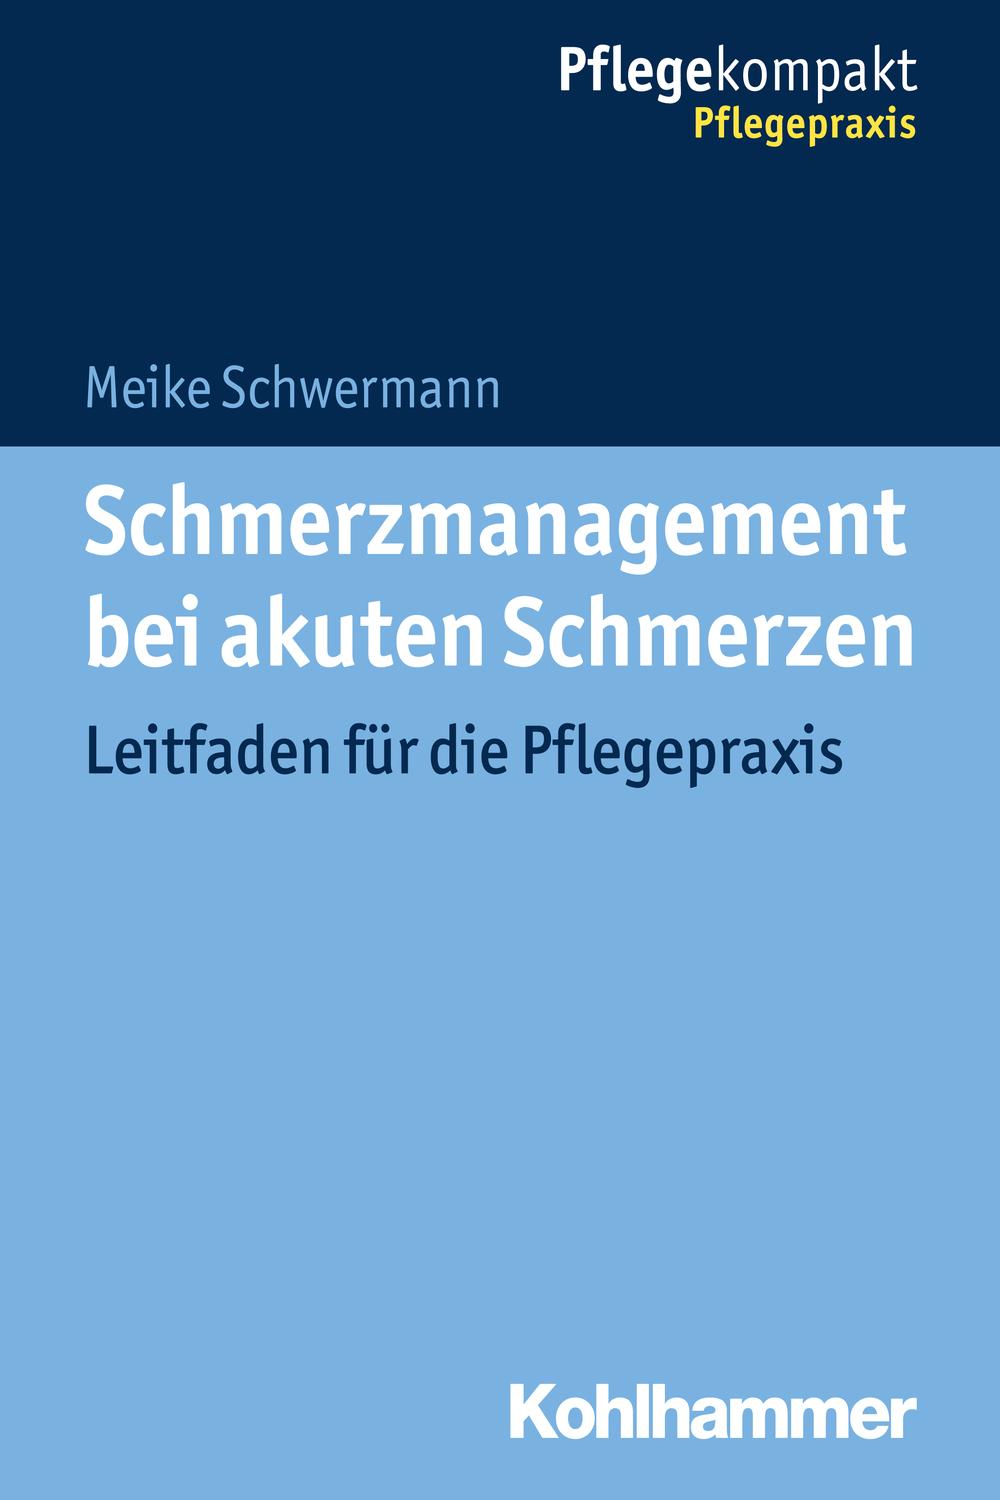 Schmerzmanagement bei akuten Schmerzen - Meike Schwermann